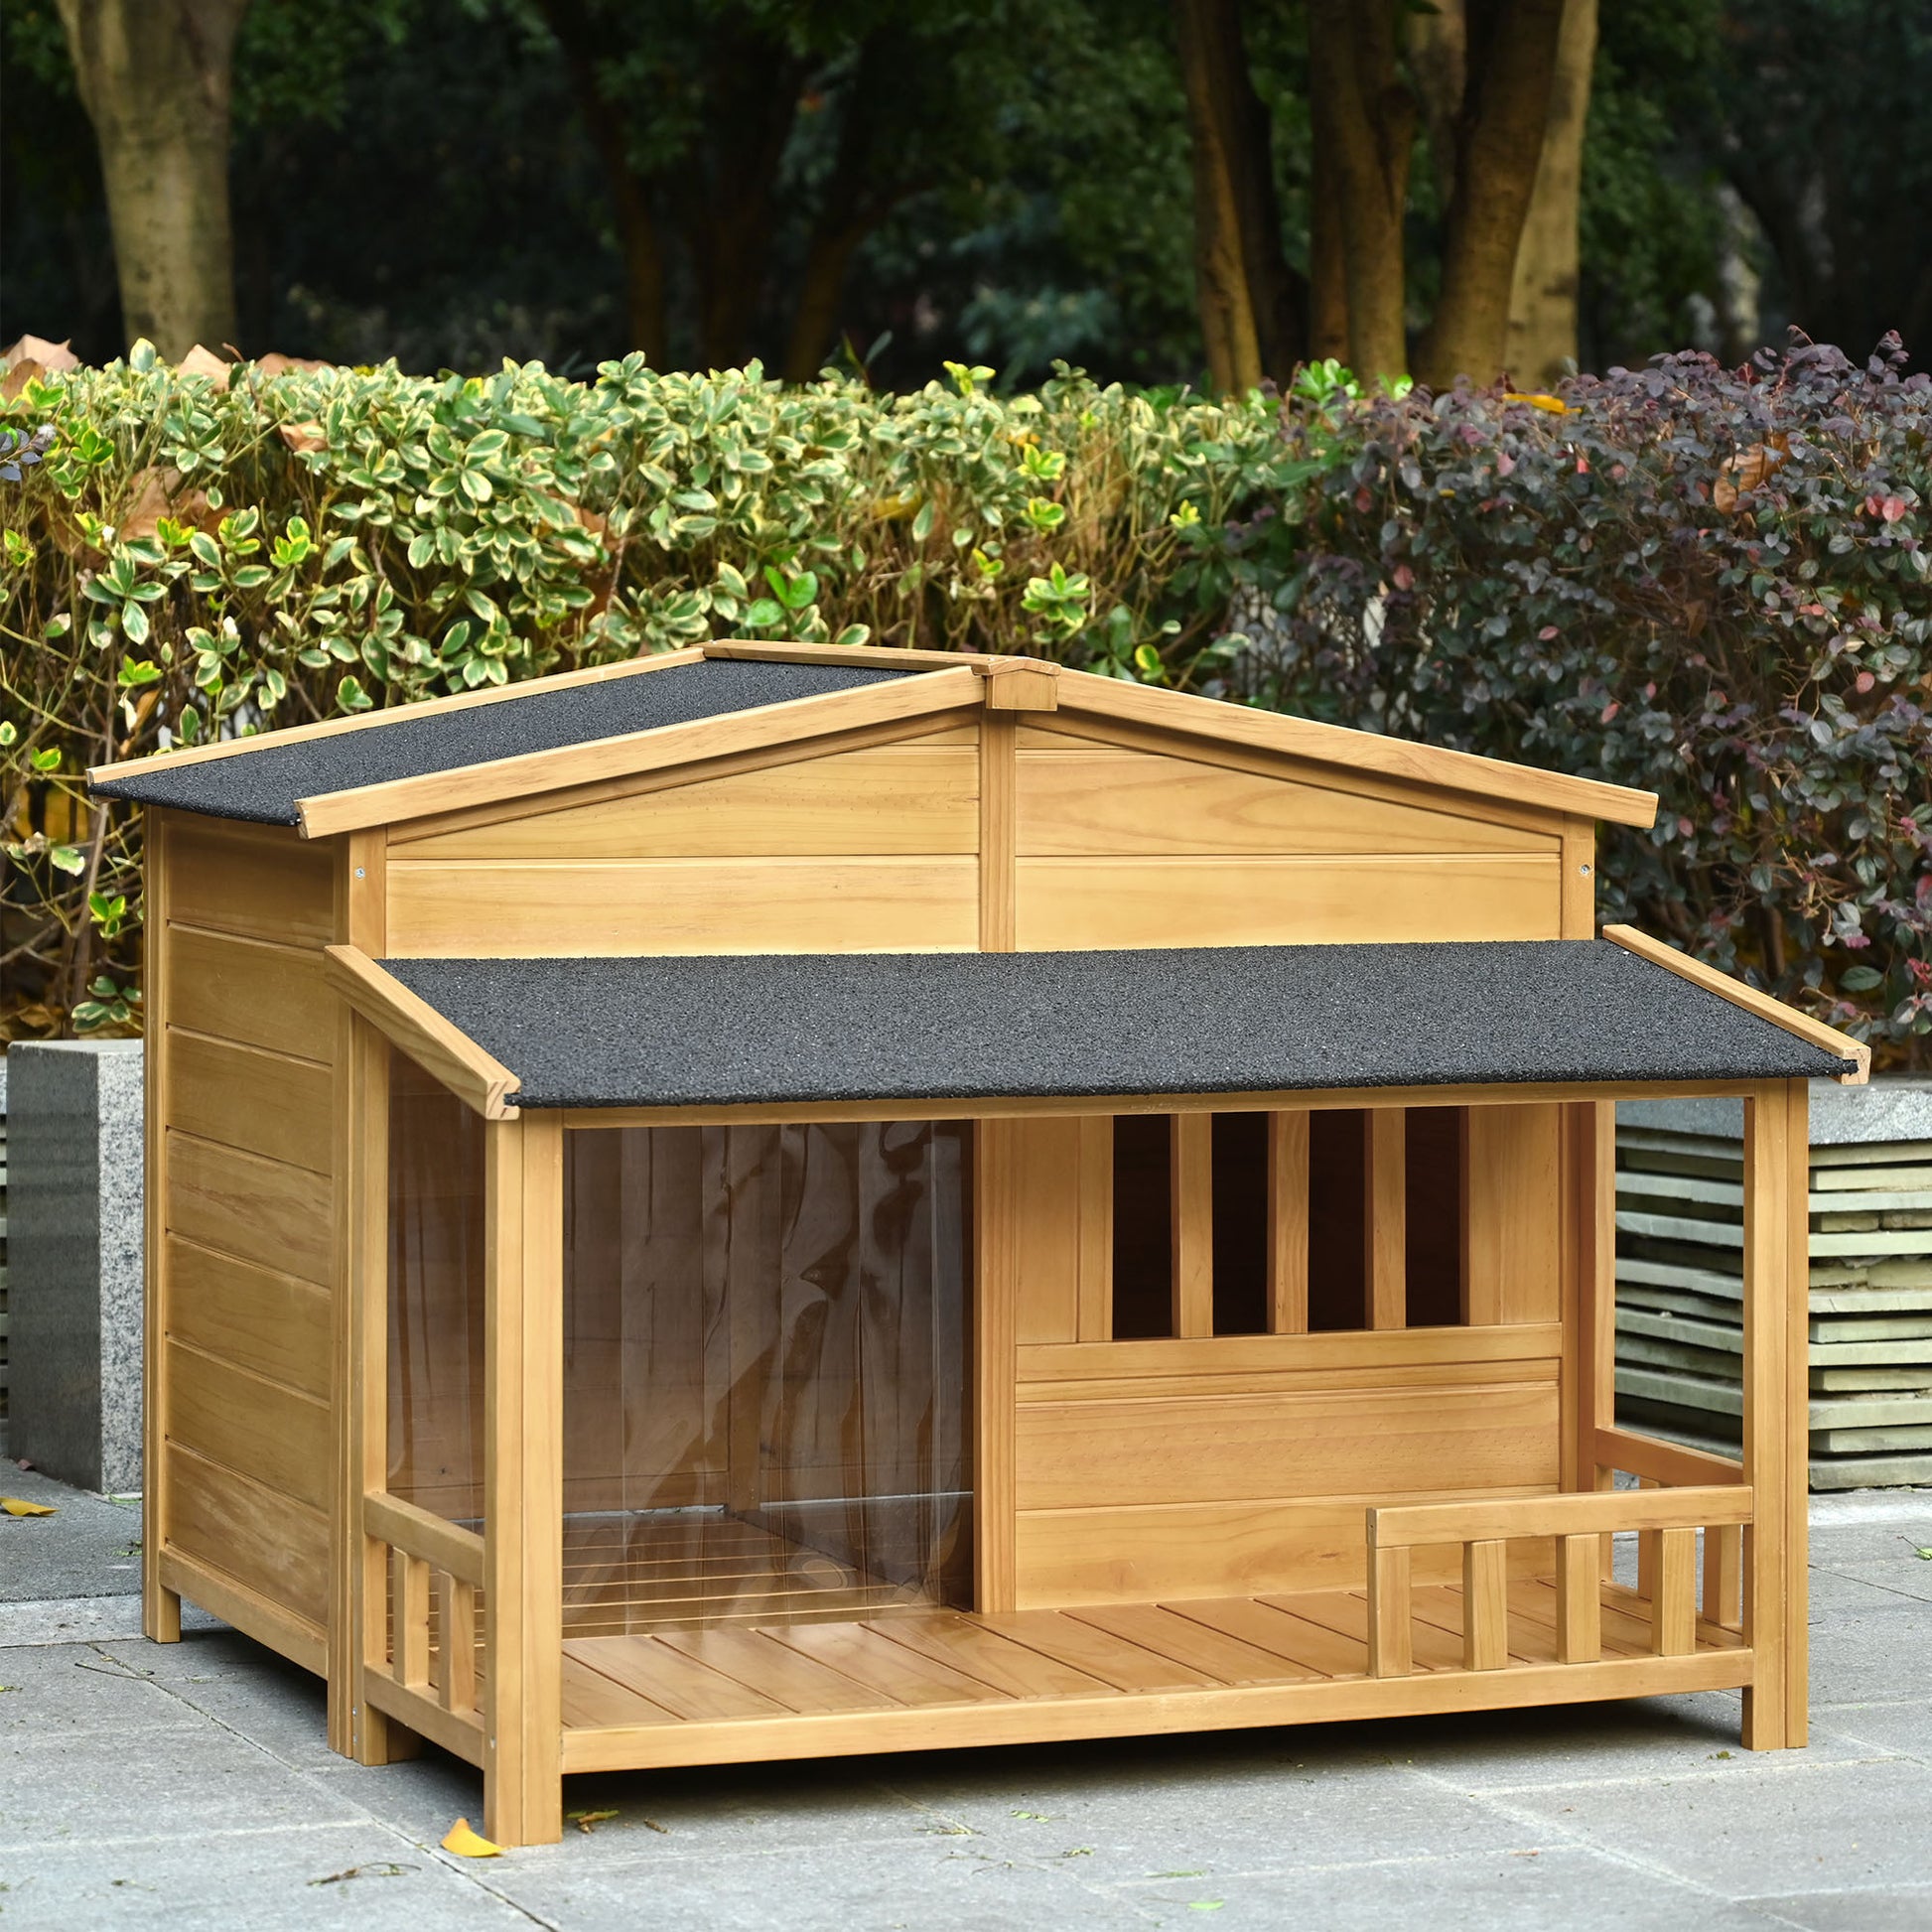 47.2" Wooden Dog House - Ukerr Home